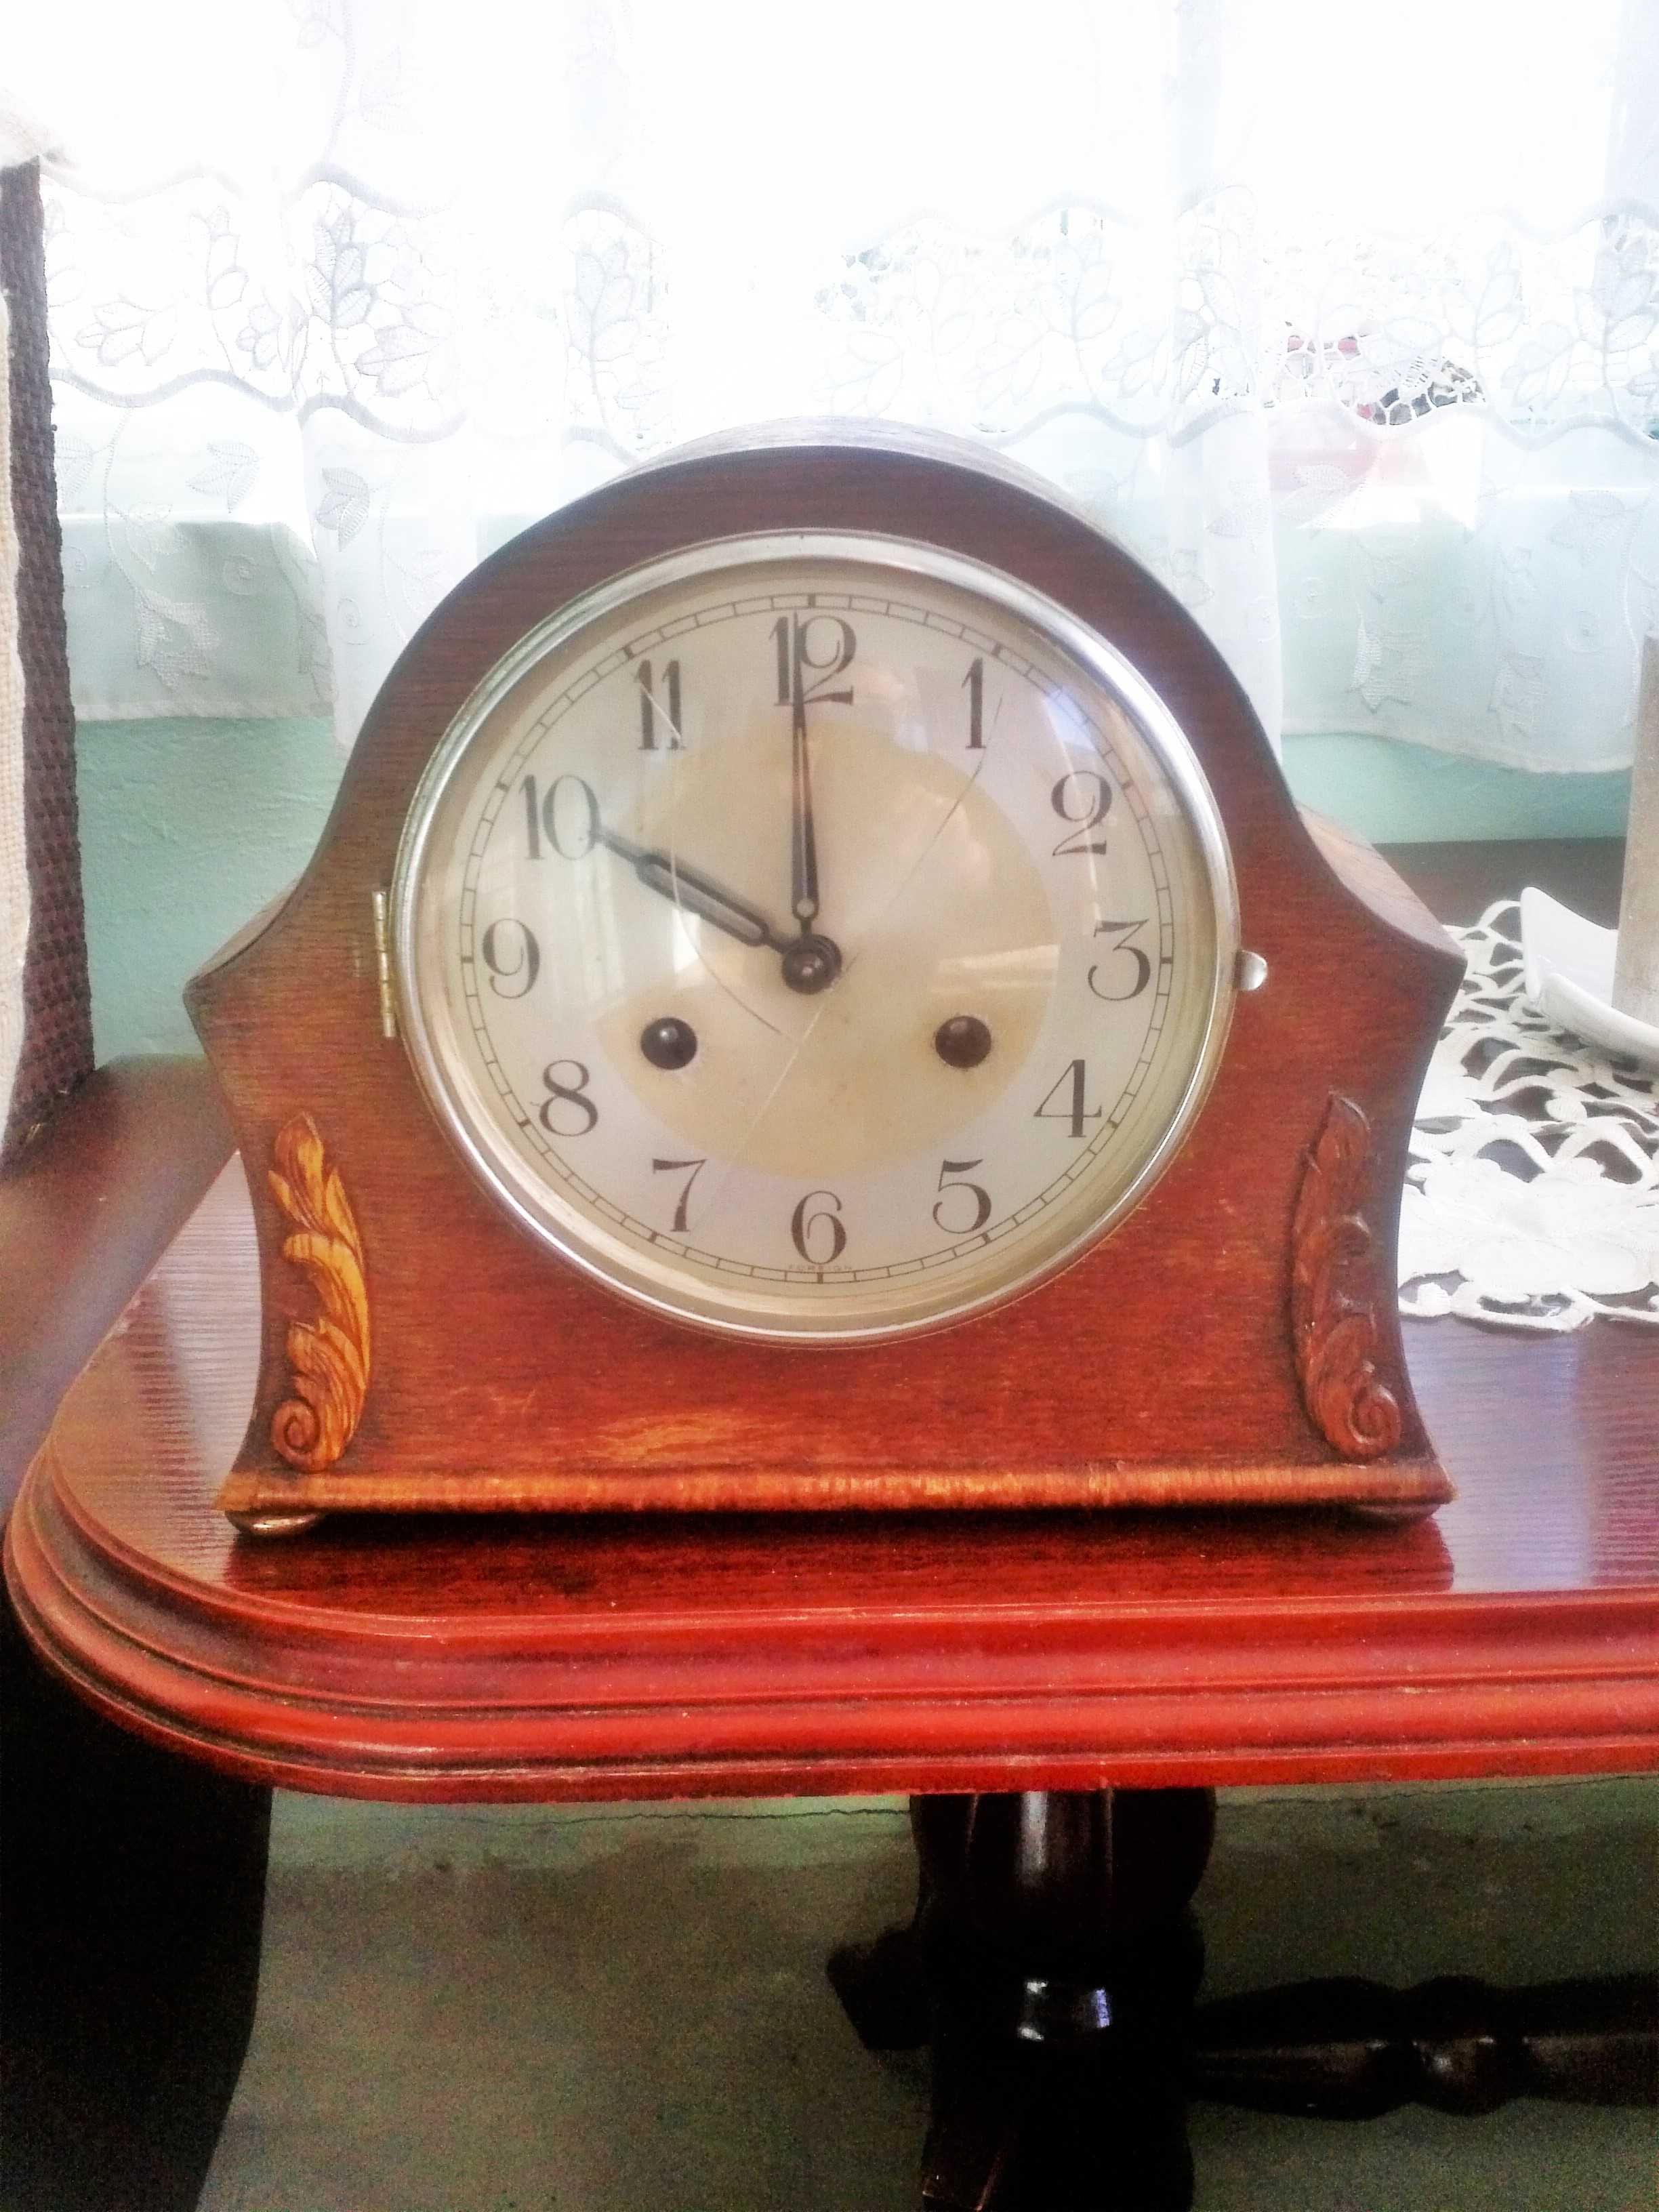 Zegarek GB stary piekny mechaniczny 3 strunowy gong